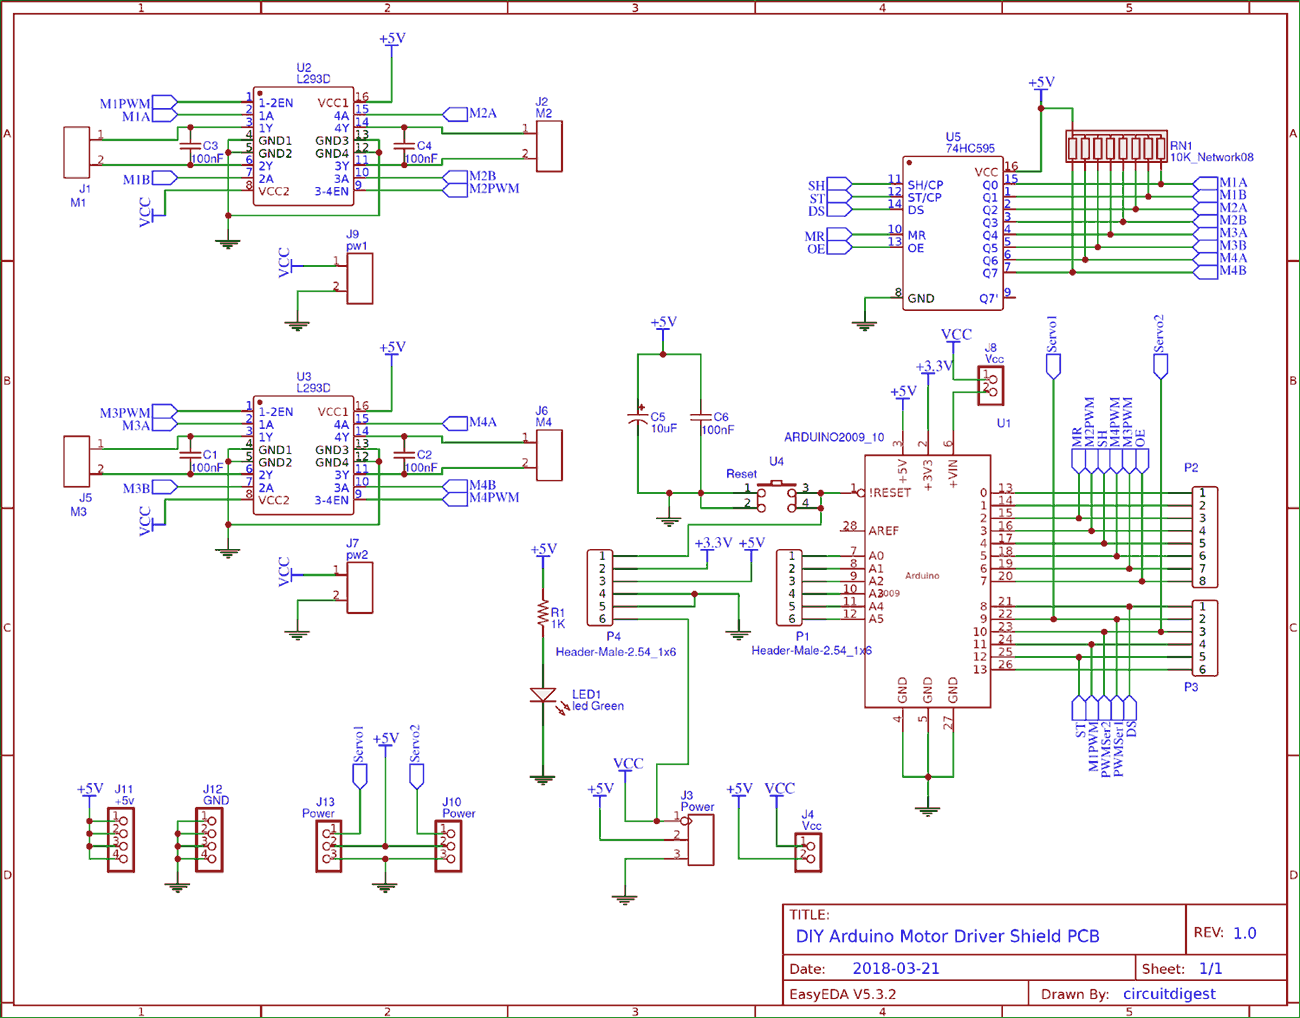 Circuit Diagram for DIY Arduino Motor Driver Shield PCB